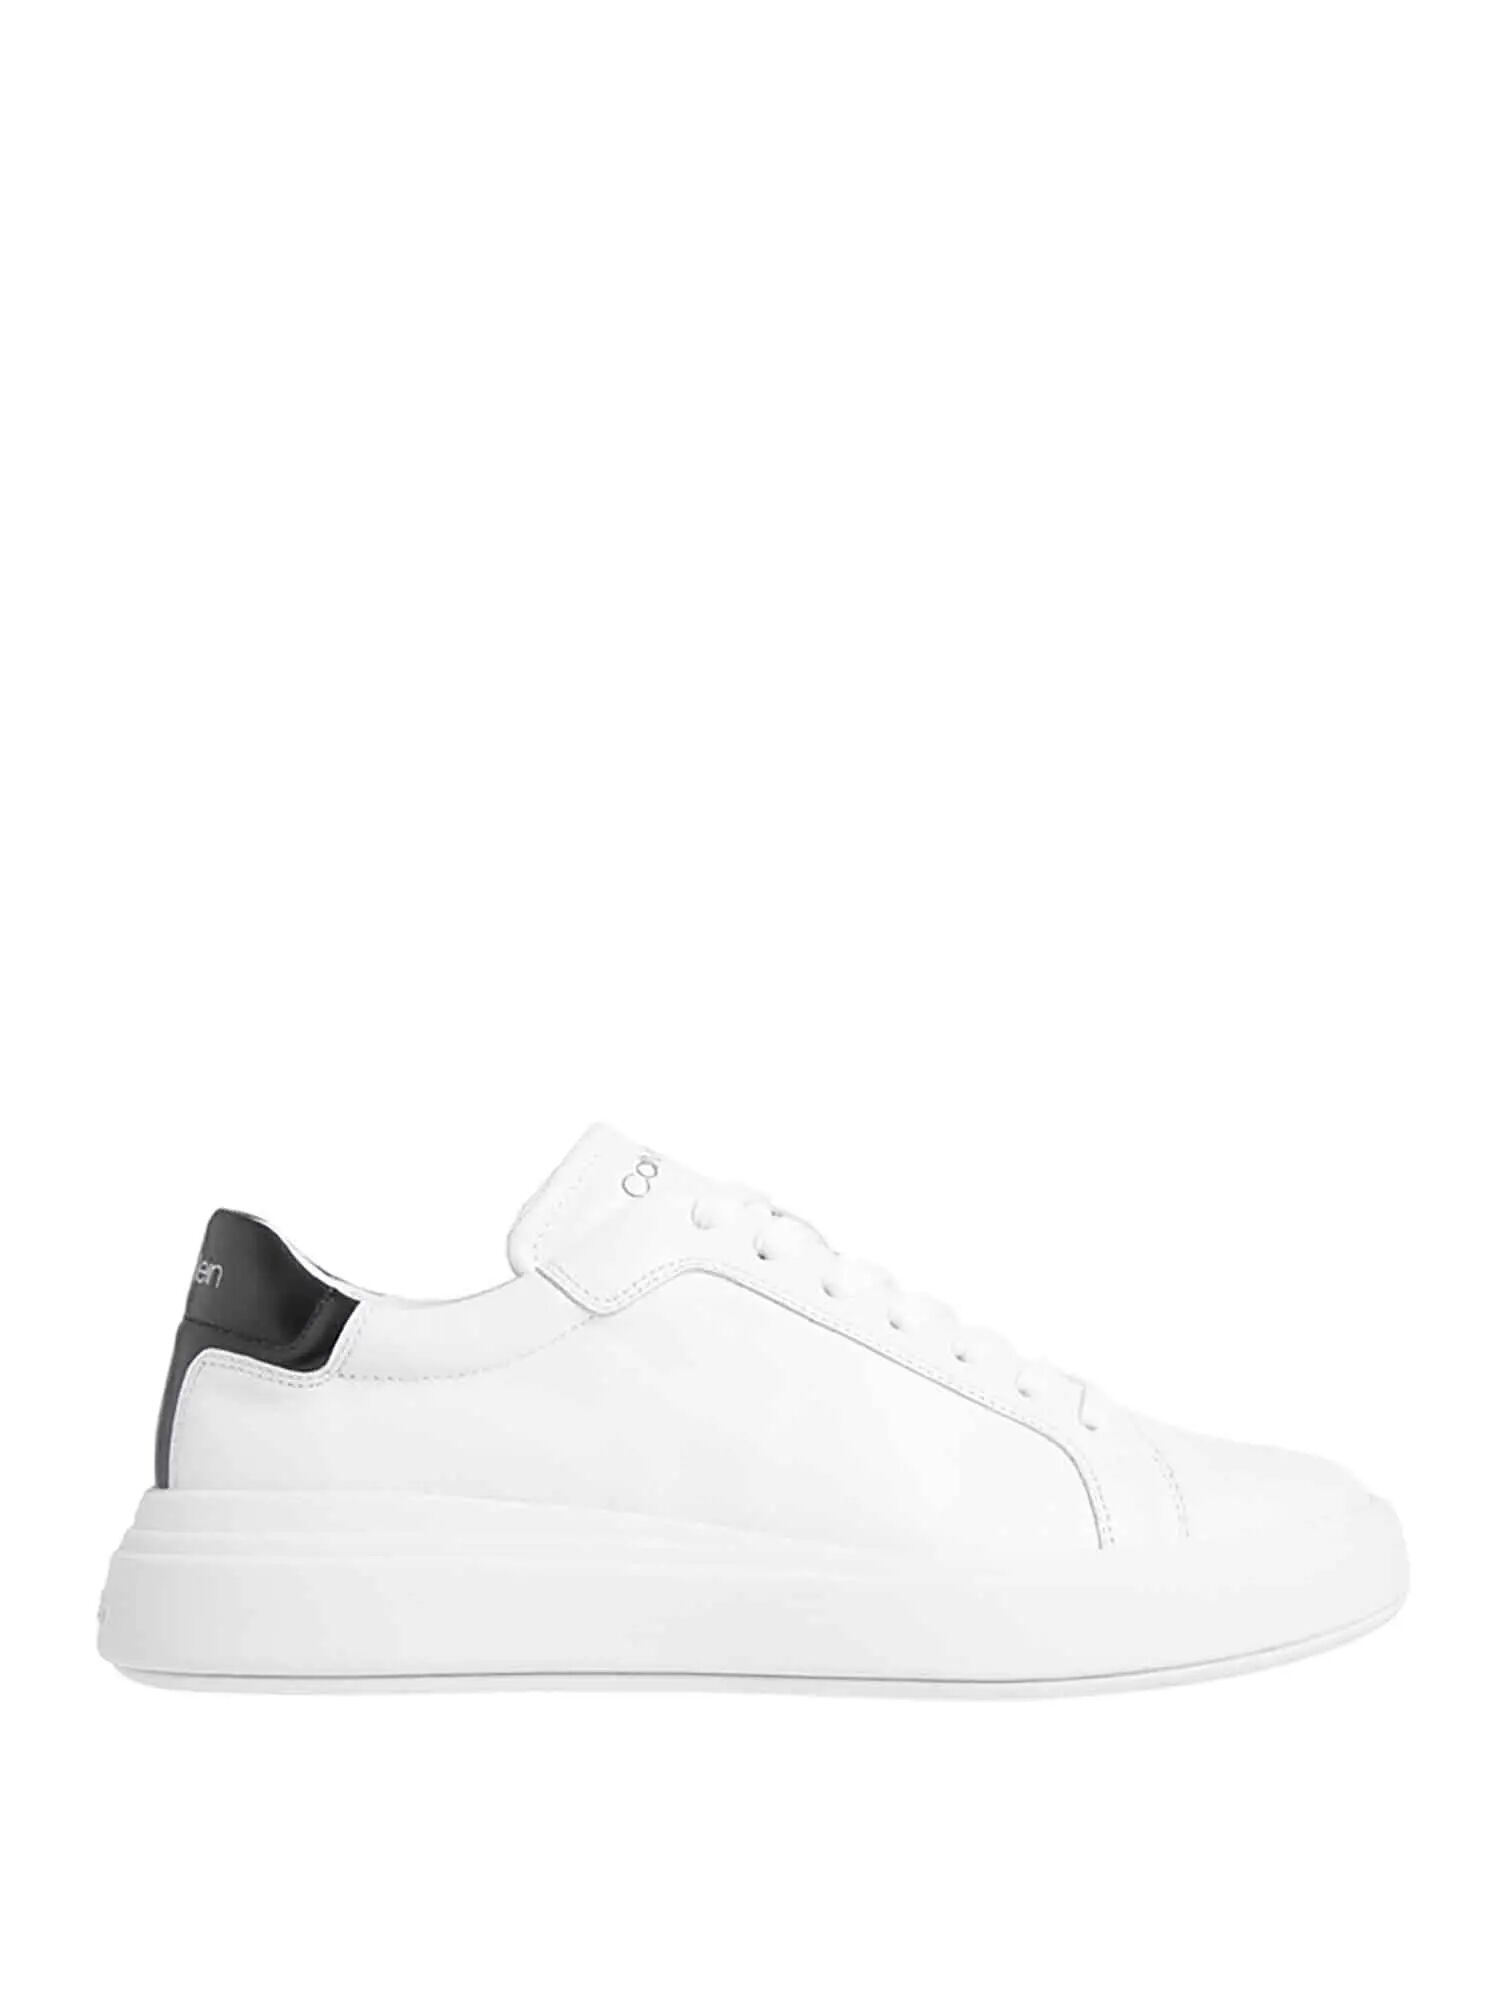 Calvin Klein Sneakers Bianche Uomo BIANCO/NERO 40